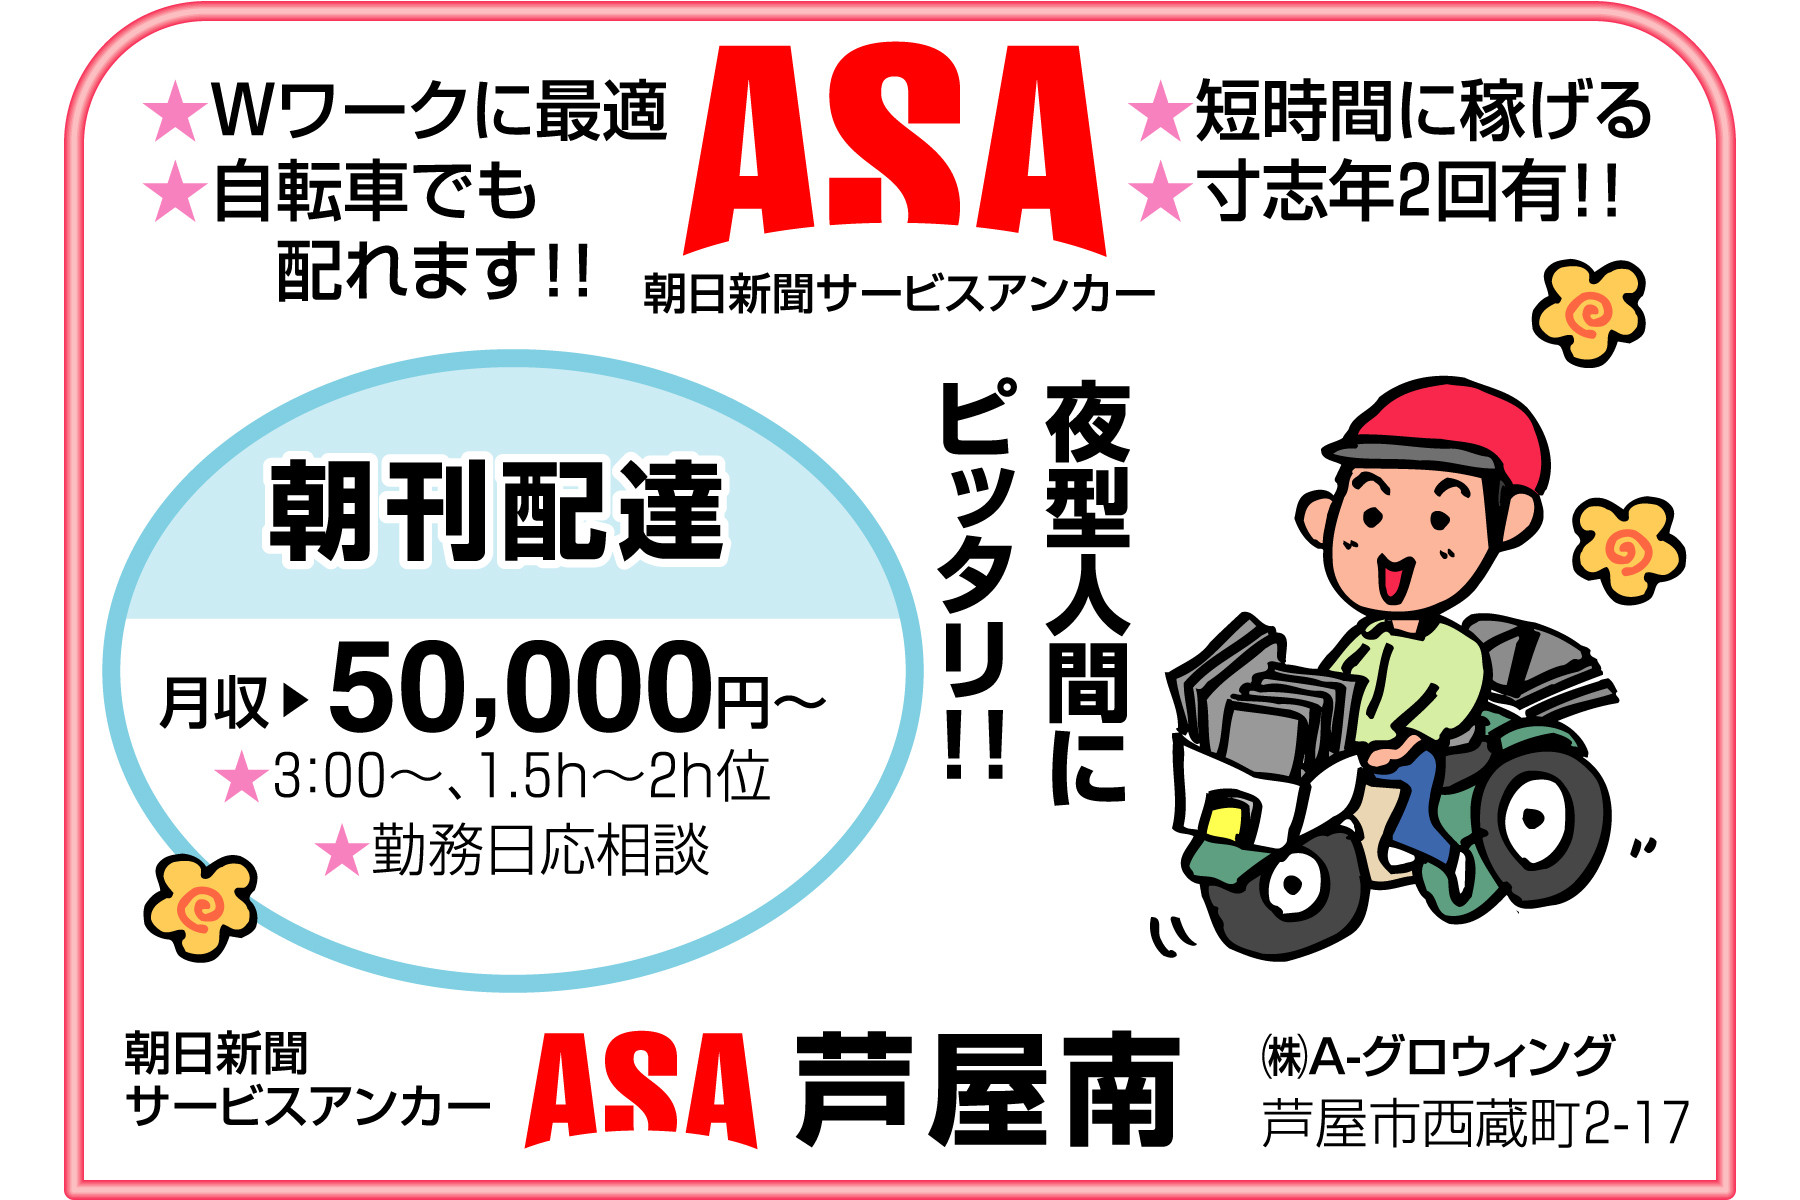 西宮 新聞配達スタッフ募集してます 求人のふぁいと 西宮を中心とした阪神エリアに特化した求人サービスを実施しております